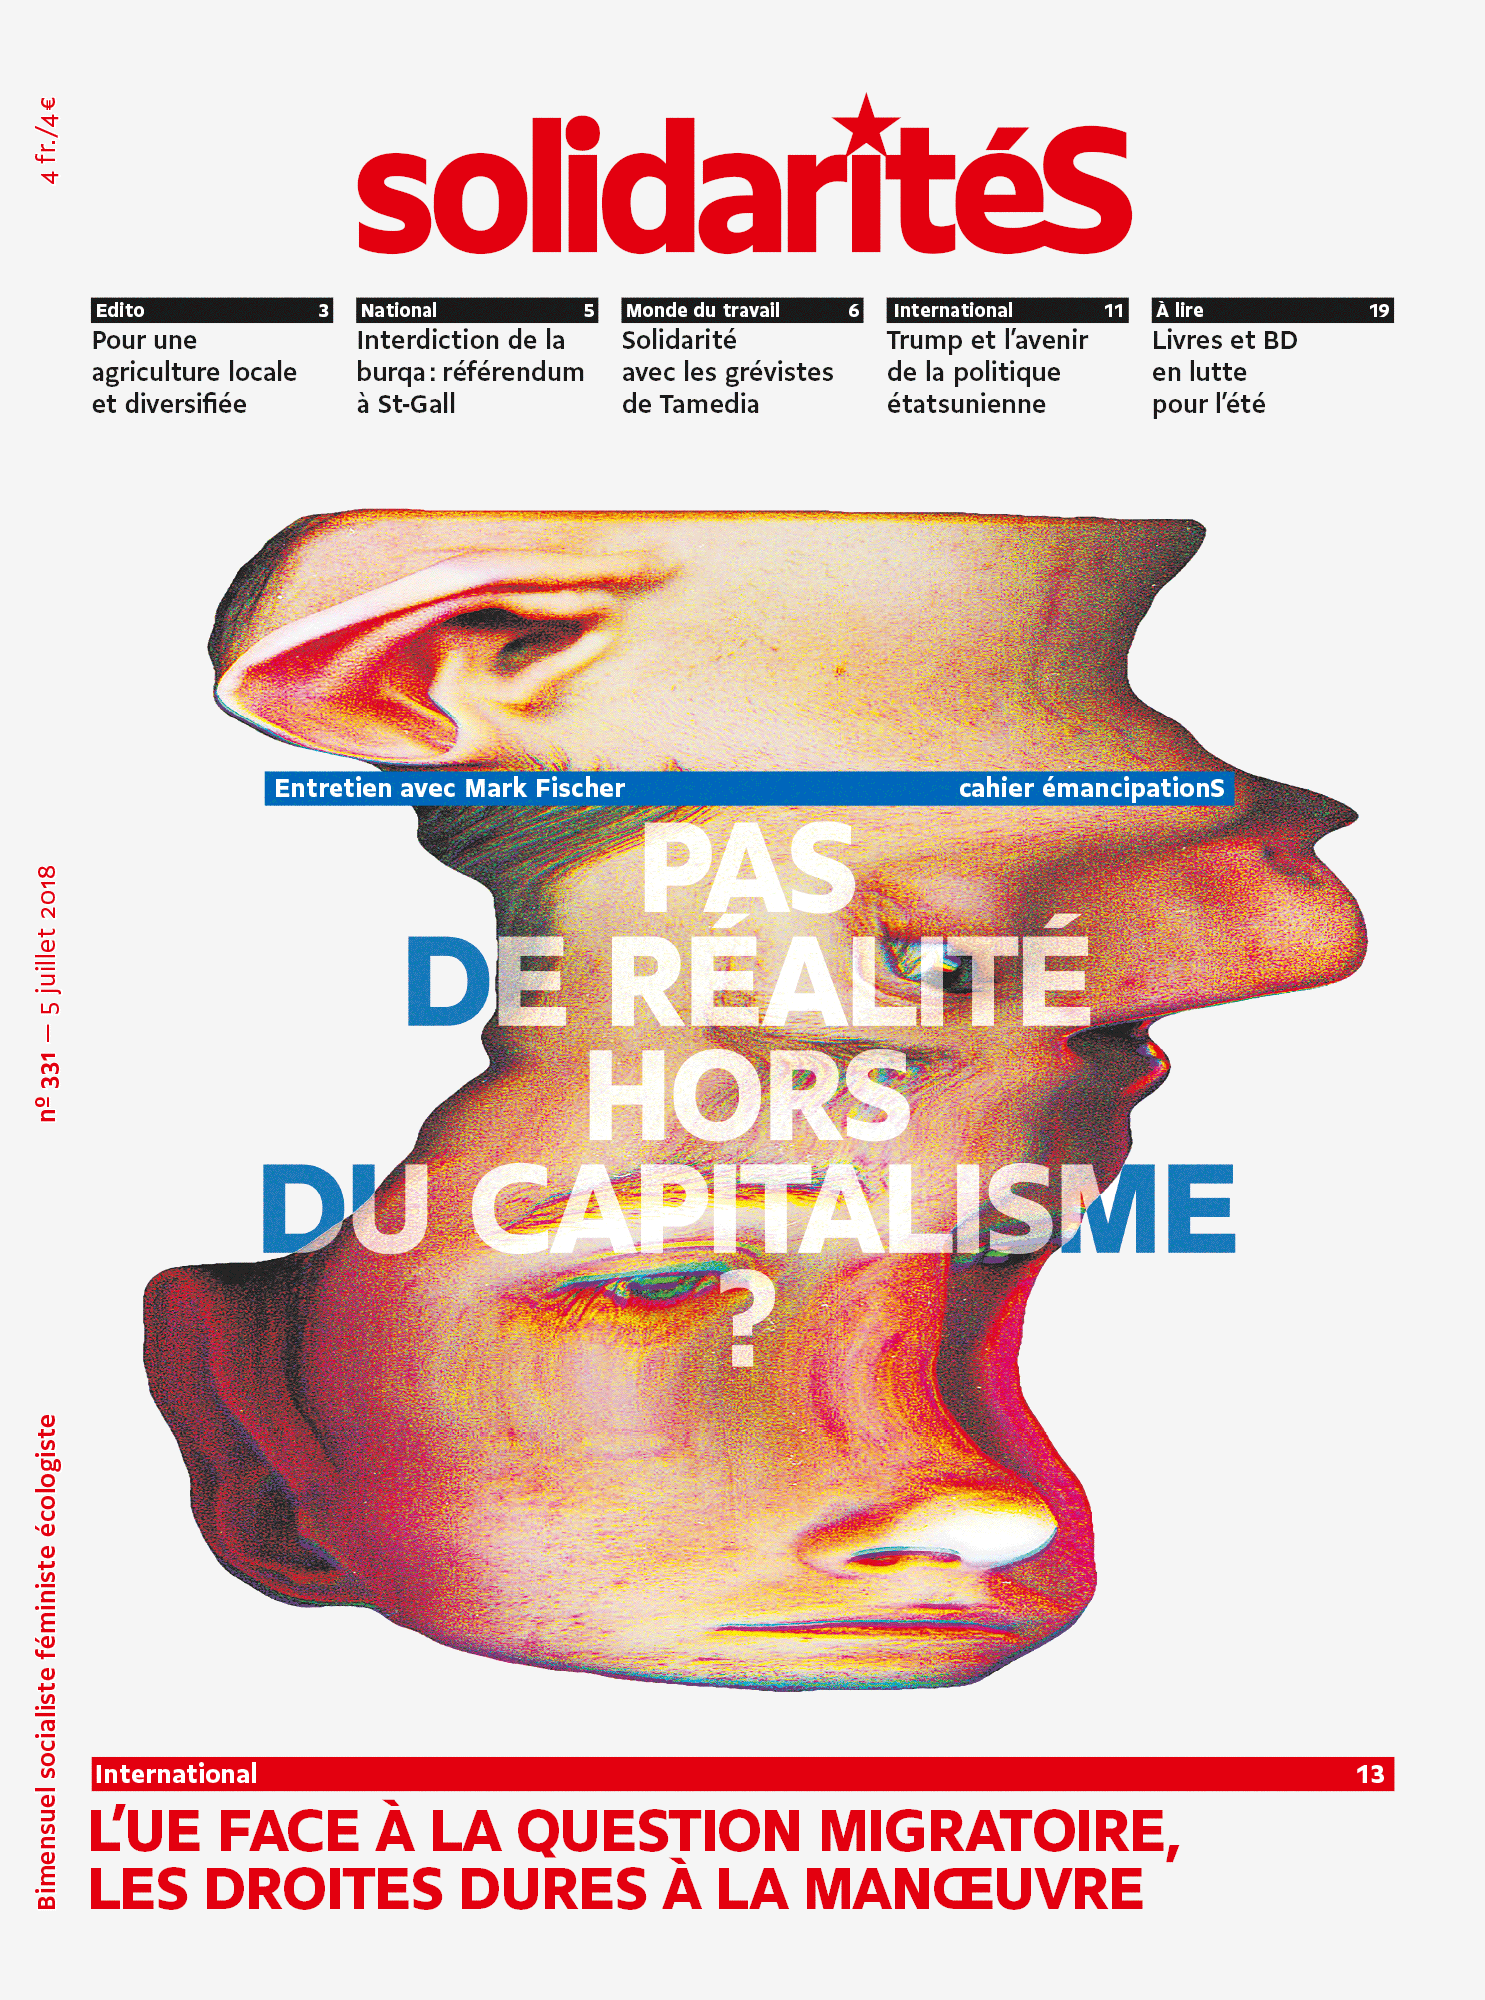 Couverture du numéro 331 du bimensuel solidaritéS: pas de réalité hors du capitalisme?